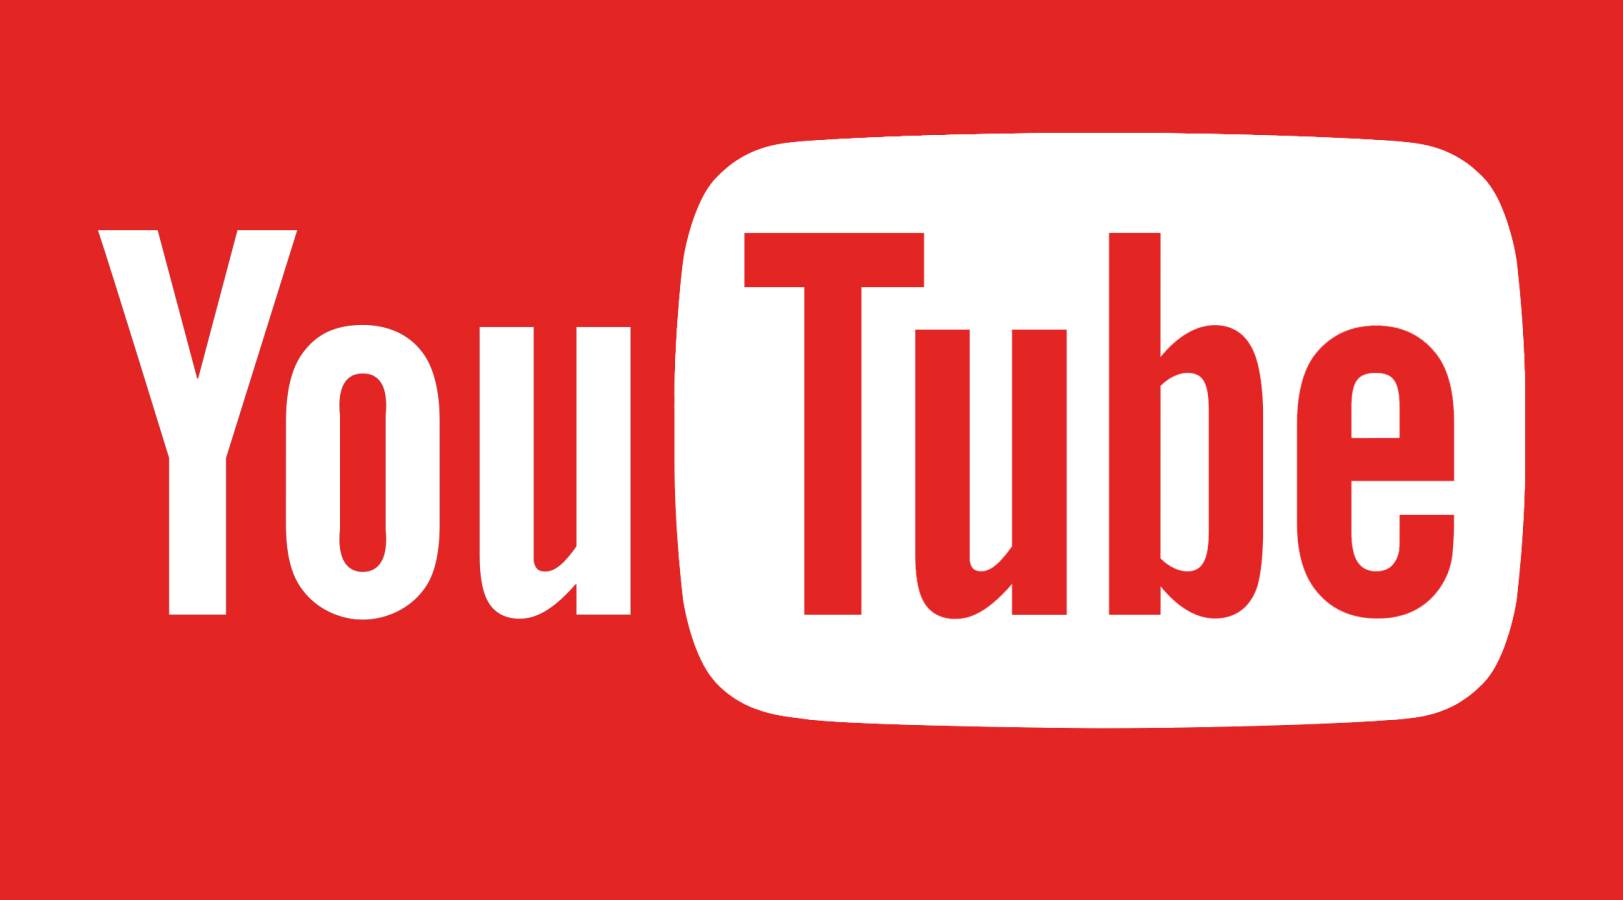 YouTube Update a fost Lansat, care sunt Schimbarile Oferite pentru Noi